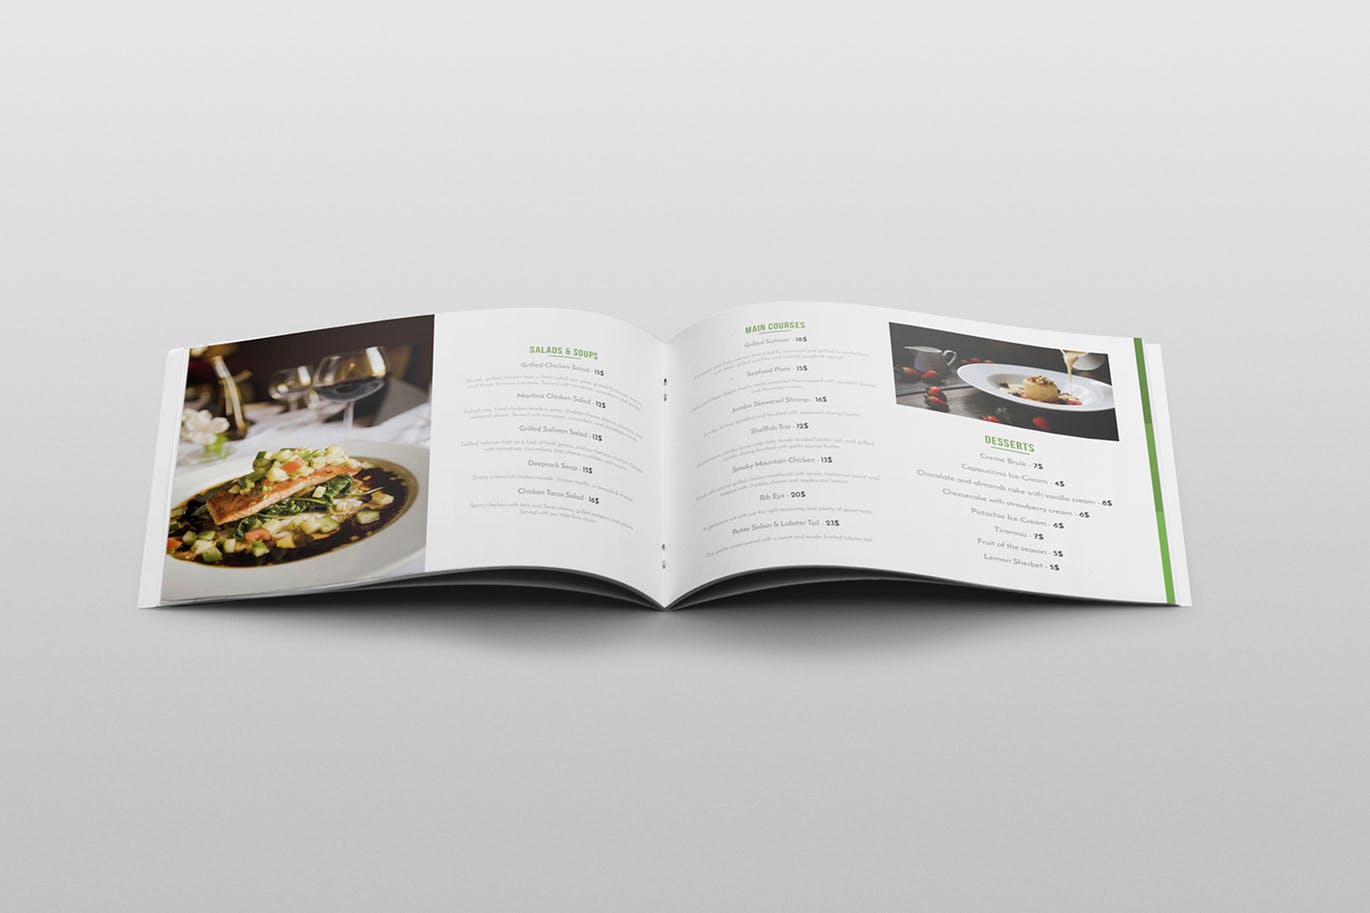 高档西餐厅宣传画册设计模板 Restaurant Brochure Template插图(8)